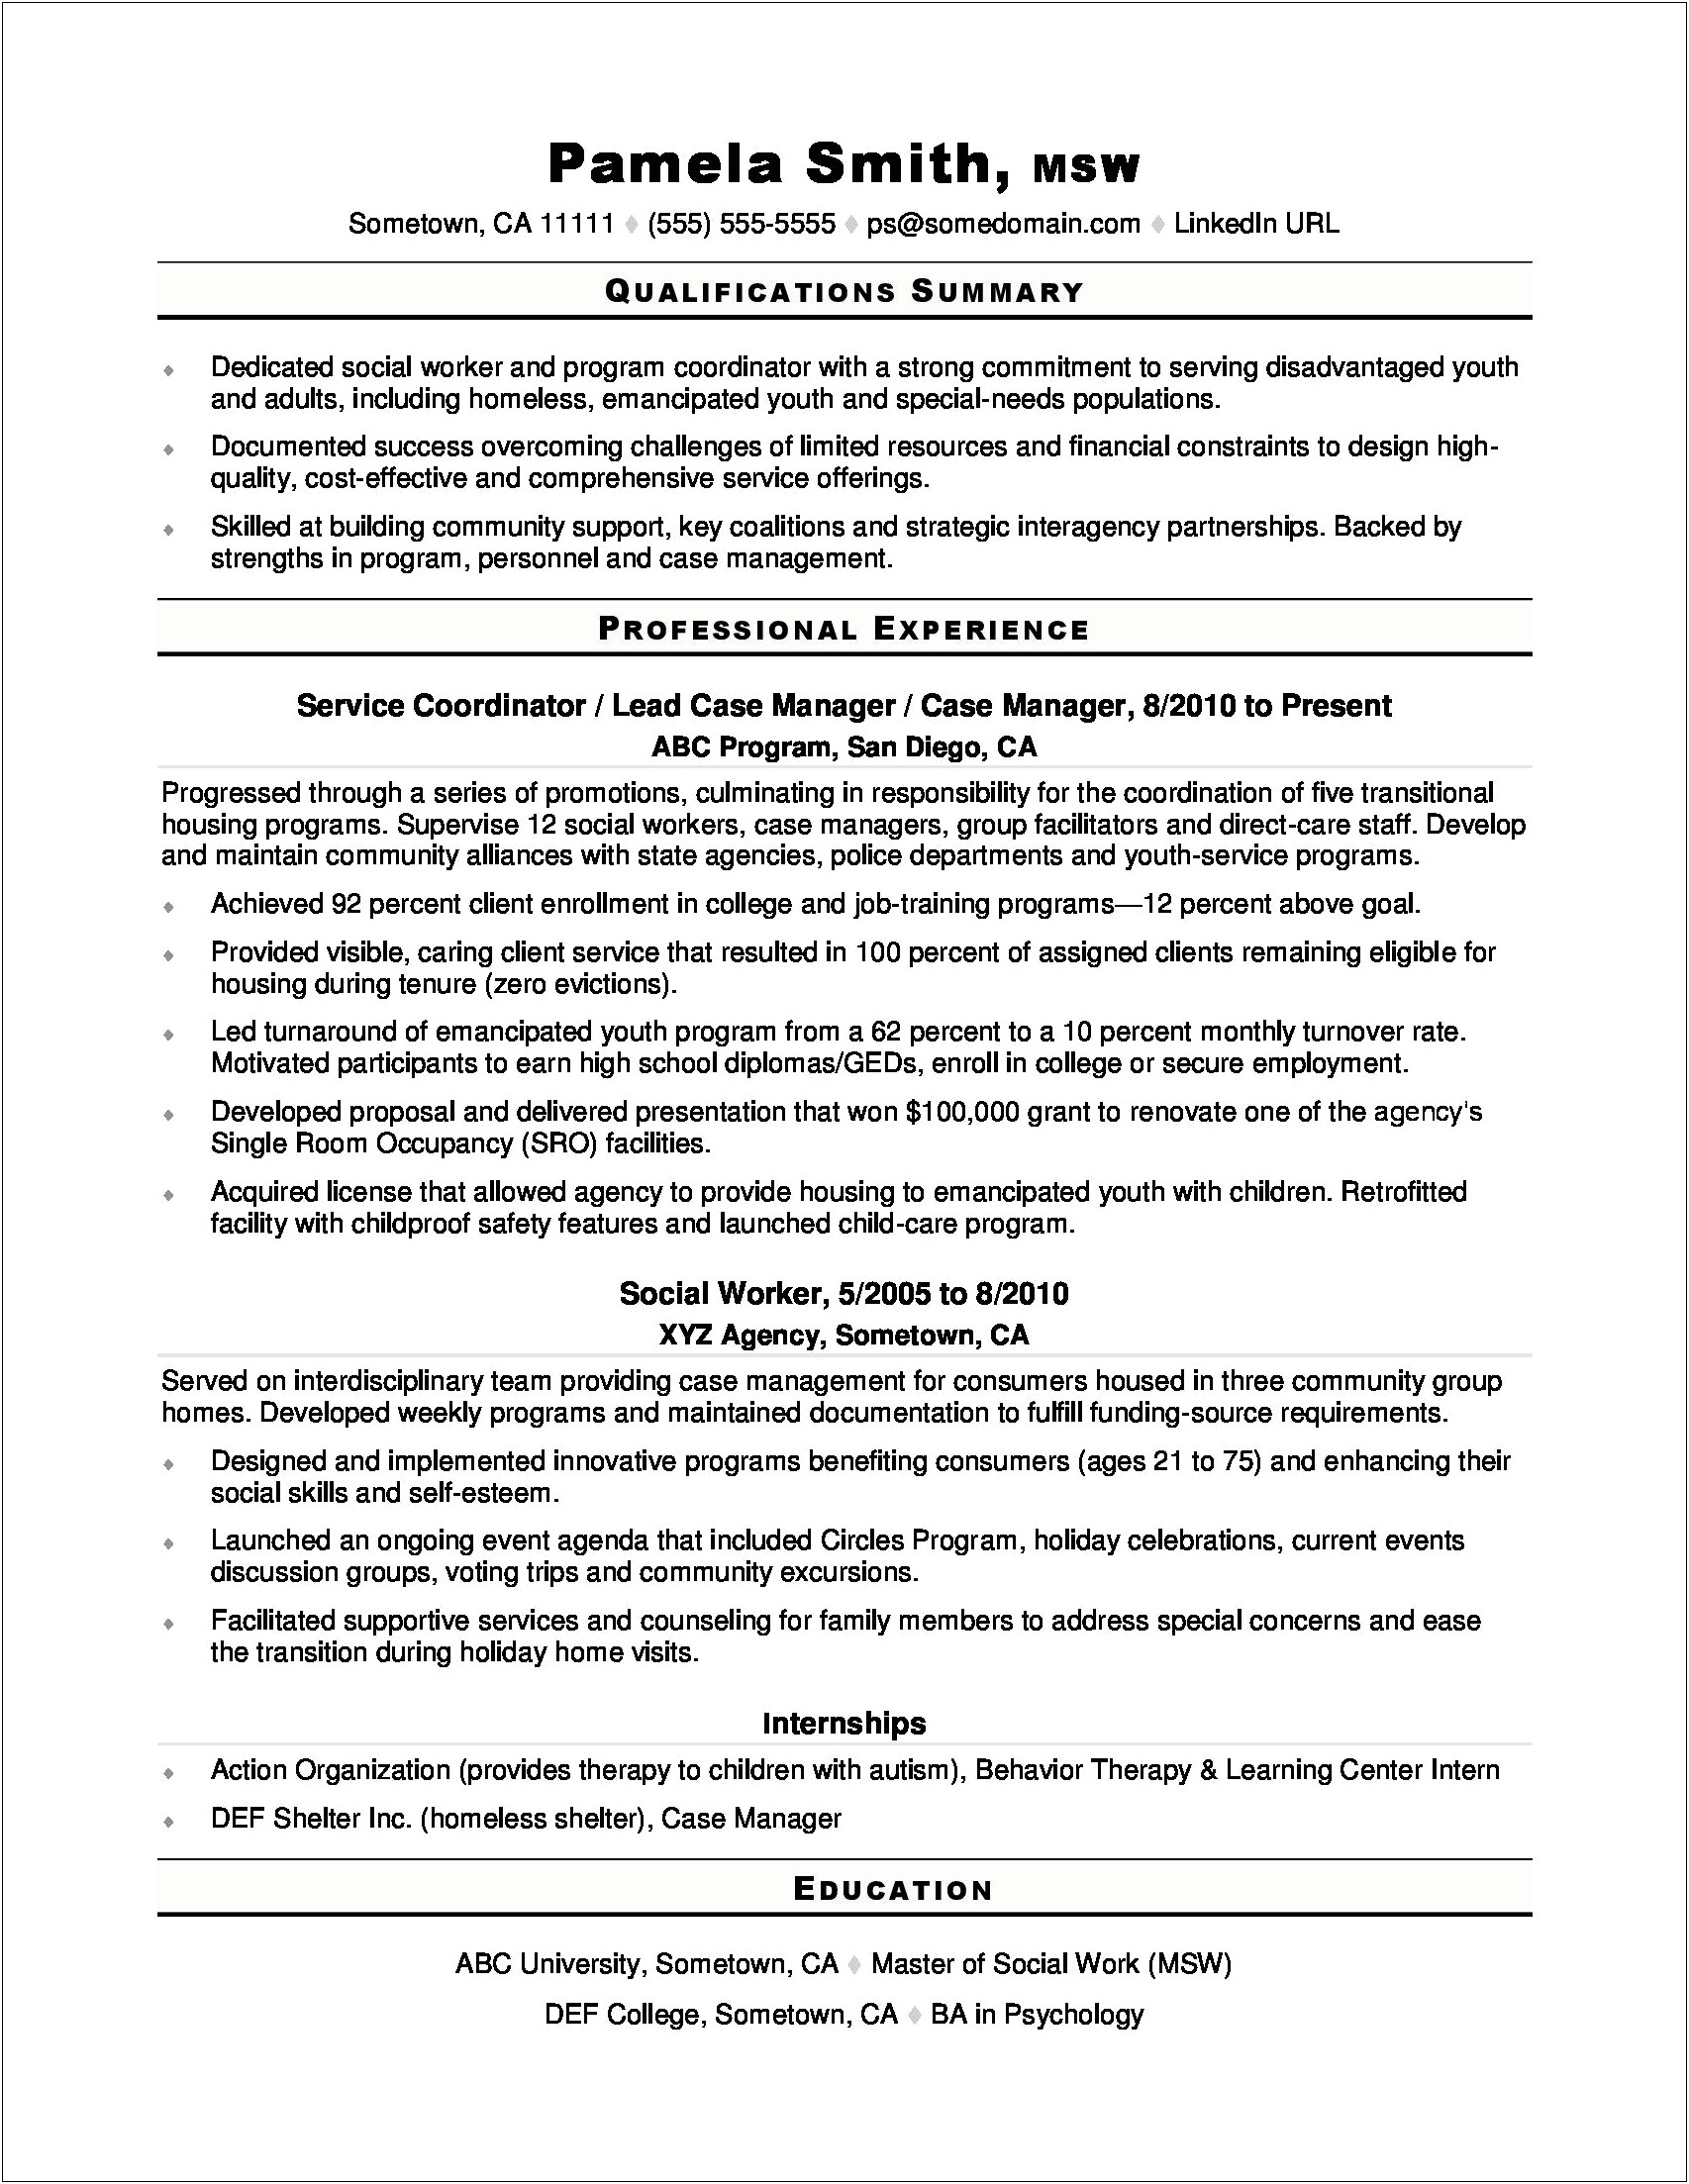 Direct Service Worker Job Description For Resume